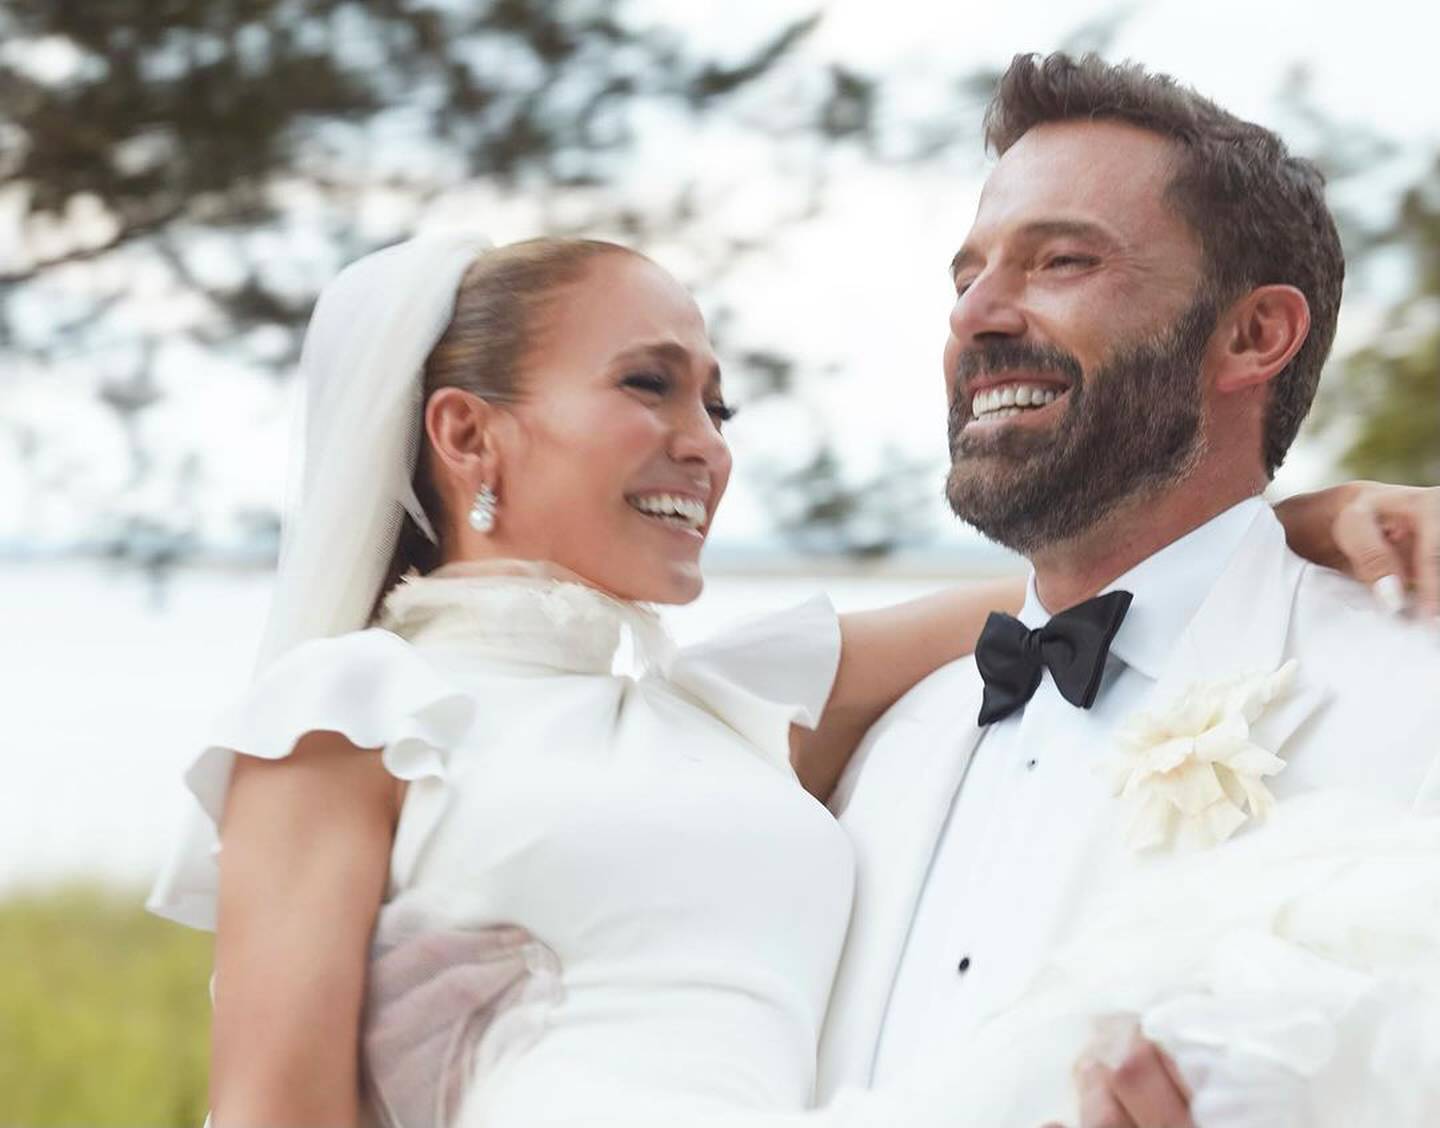 Jennifer López y Ben Affleck cumplieron un año de casados y la cantante celebró este hito con lindas postales de su matrimonio. Además le dedicó un bonito mensaje.